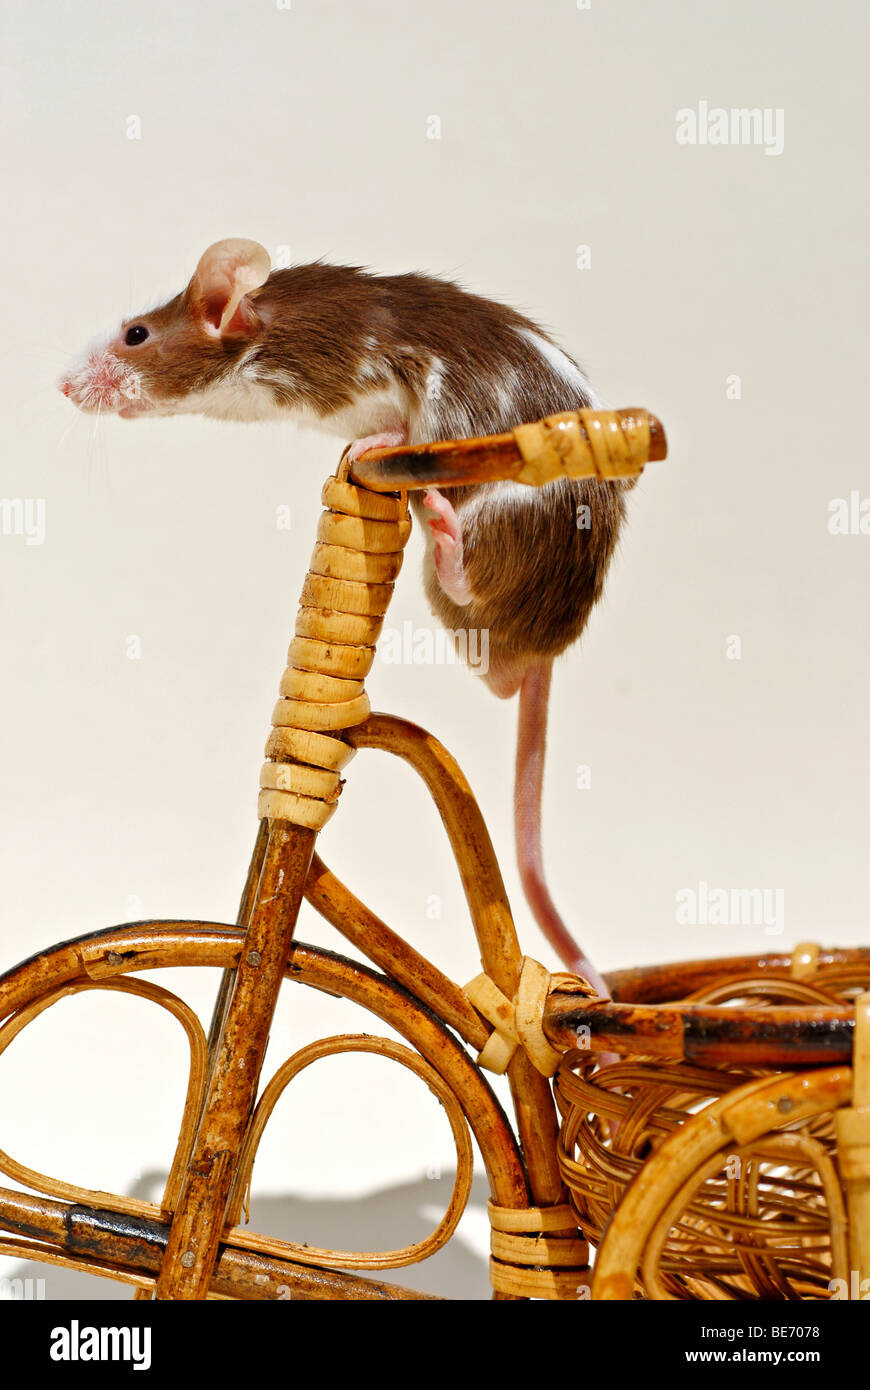 Ausgefallene Maus auf einem dekorativen Dreirad gemacht von willow Stockfoto